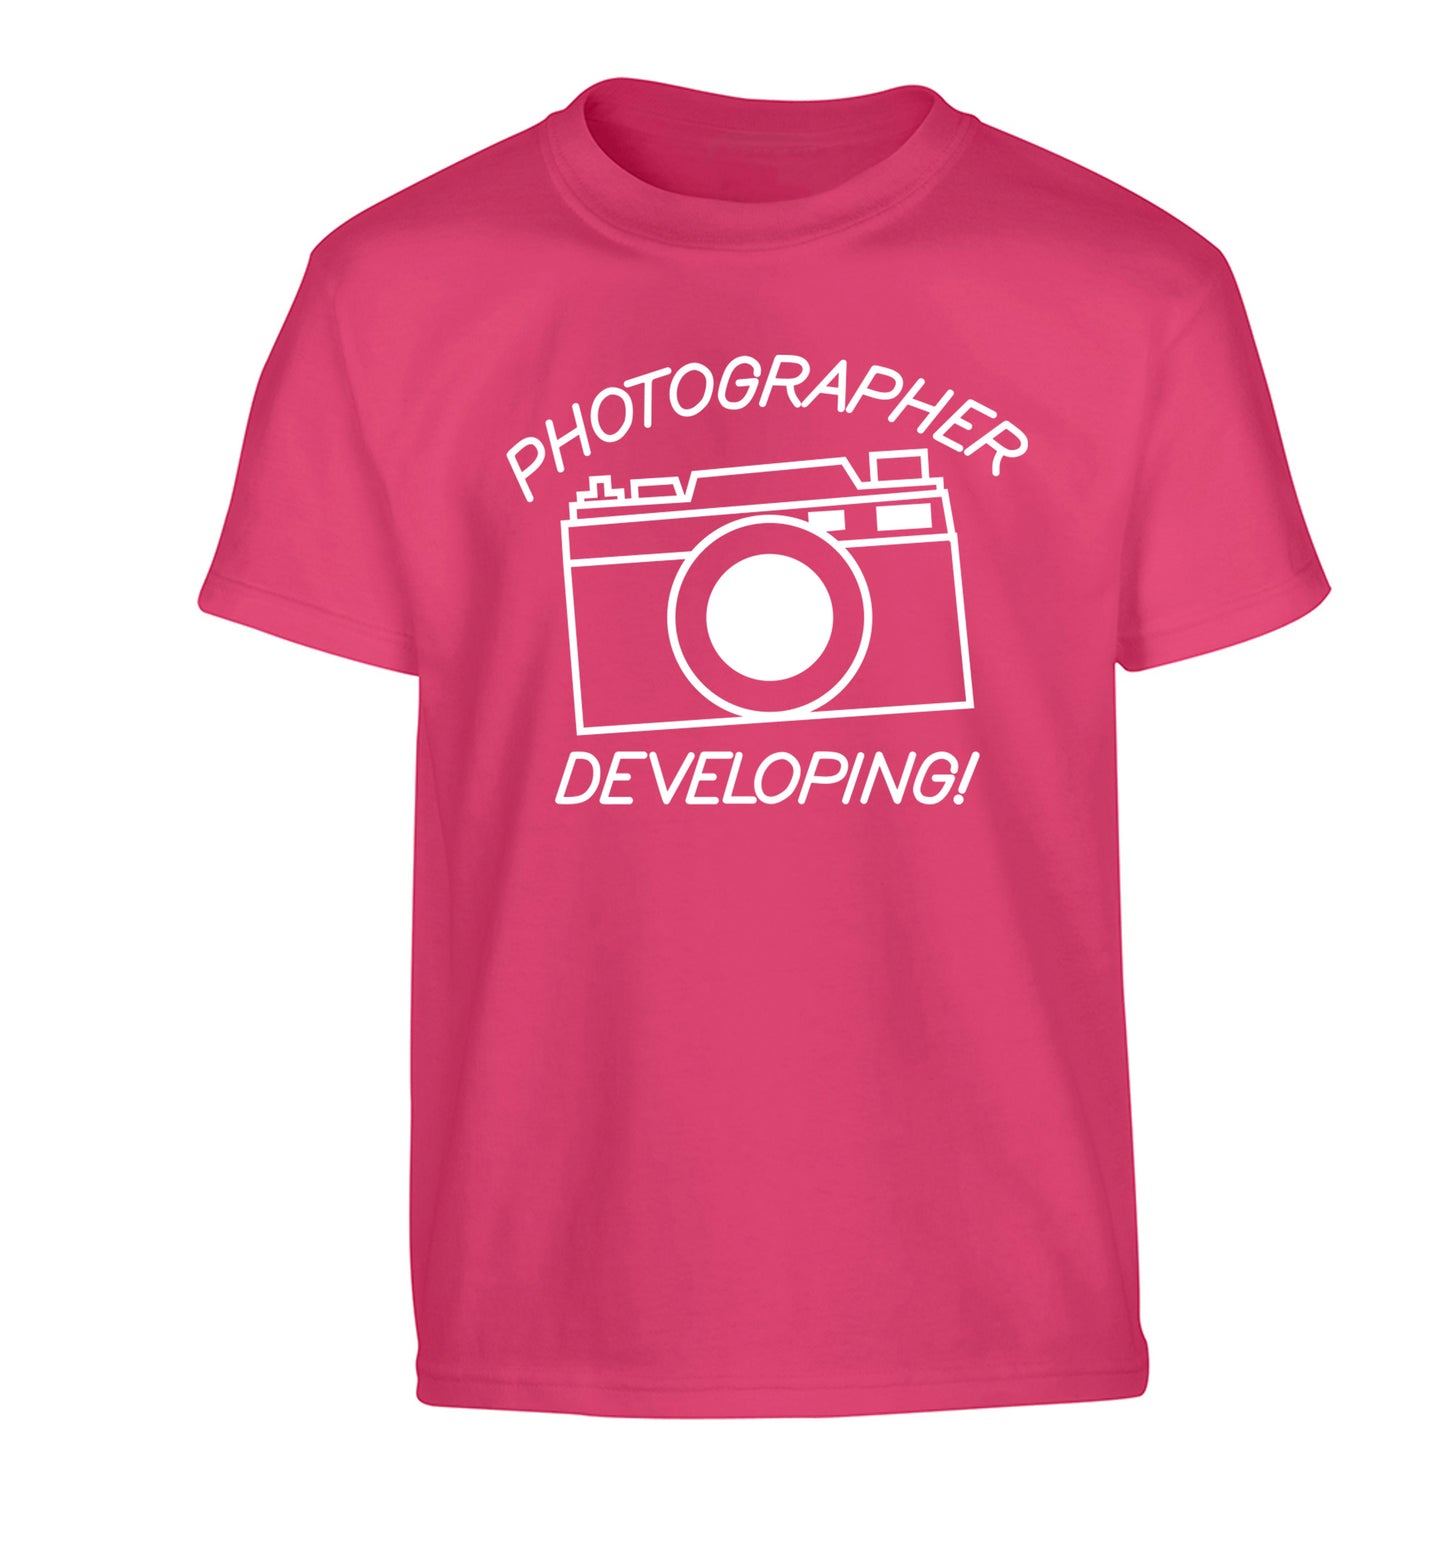 Photographer Developing  Children's pink Tshirt 12-13 Years